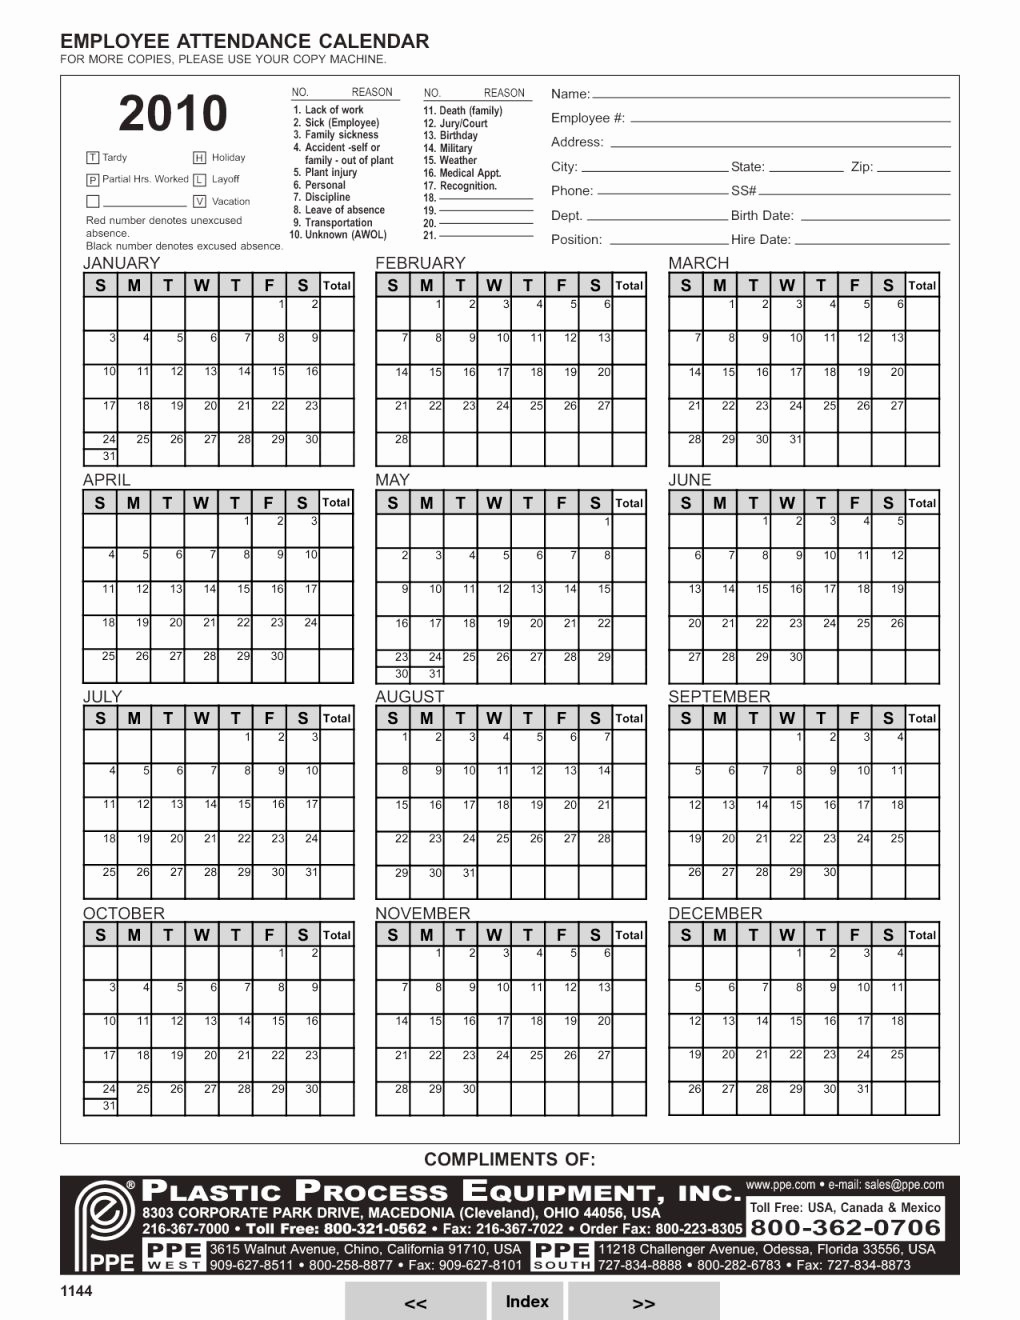 Calendar Tracker 2018 Employee Attendance Tracker Calendar Printable throughout Printable Employee Attendance Calendar Template Excel